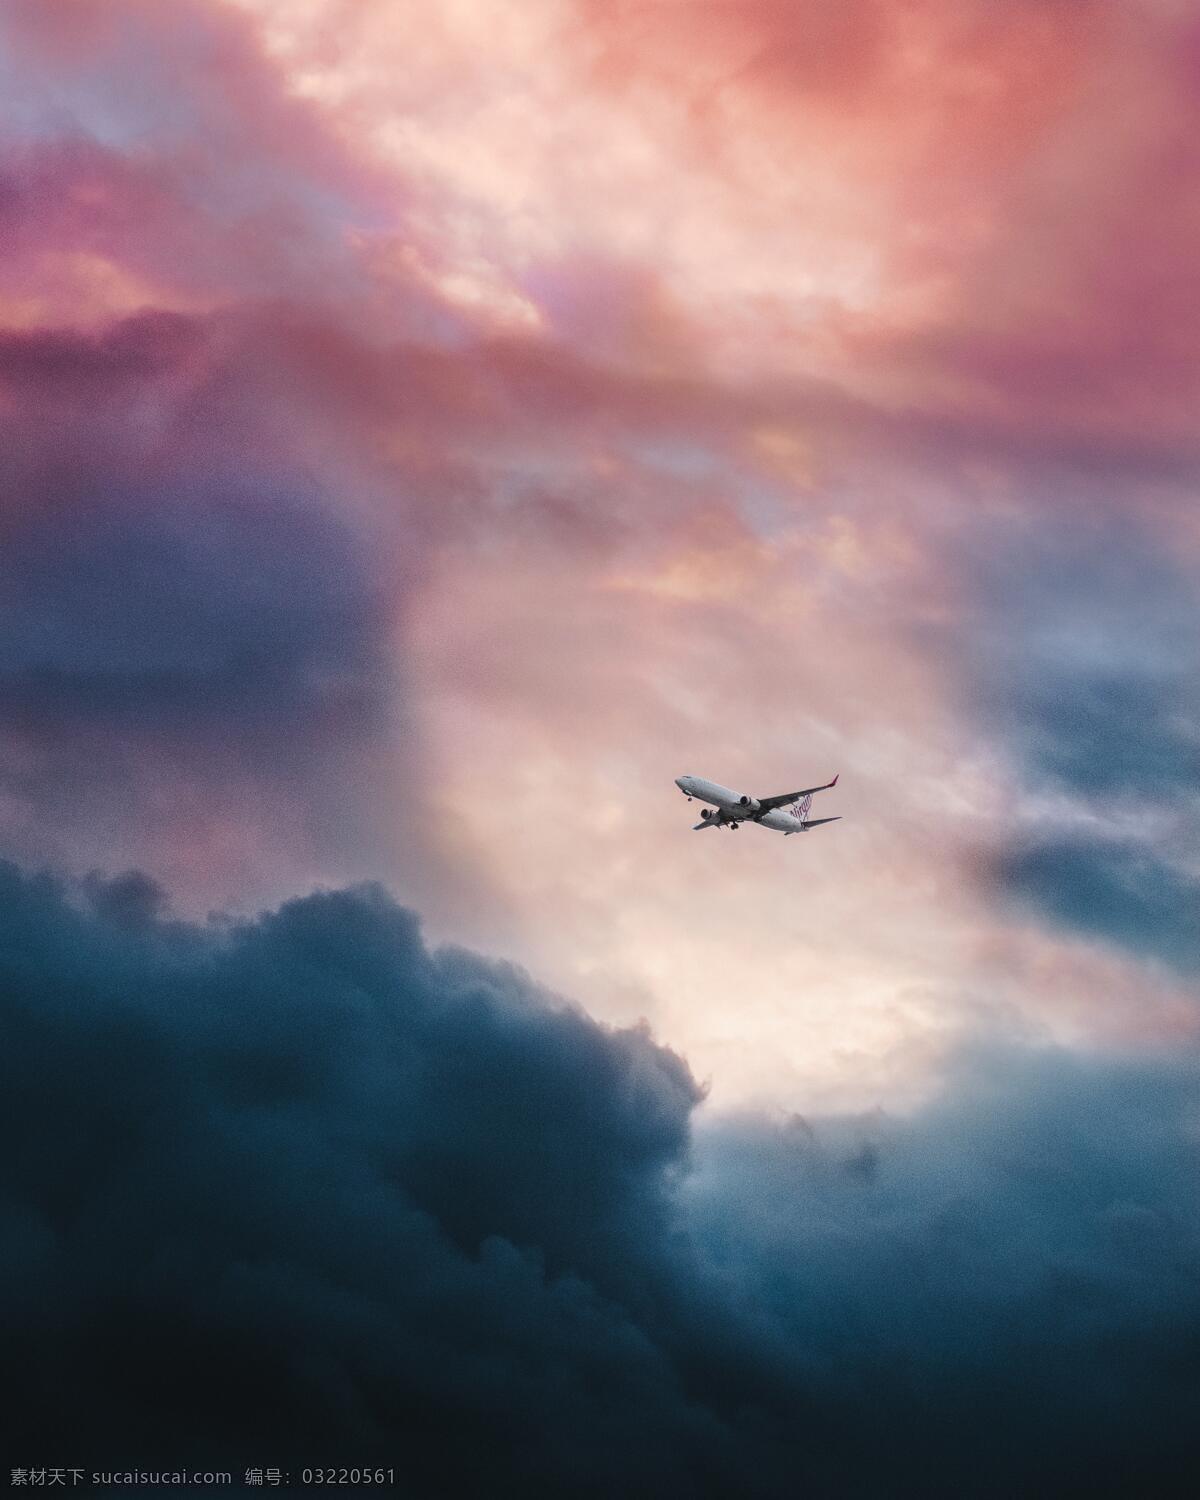 天空 飞机 空中 天空中 云朵素材 云朵 天空摄影 唯美天空 唯美背景 唯美桌面 自然景观 自然风景